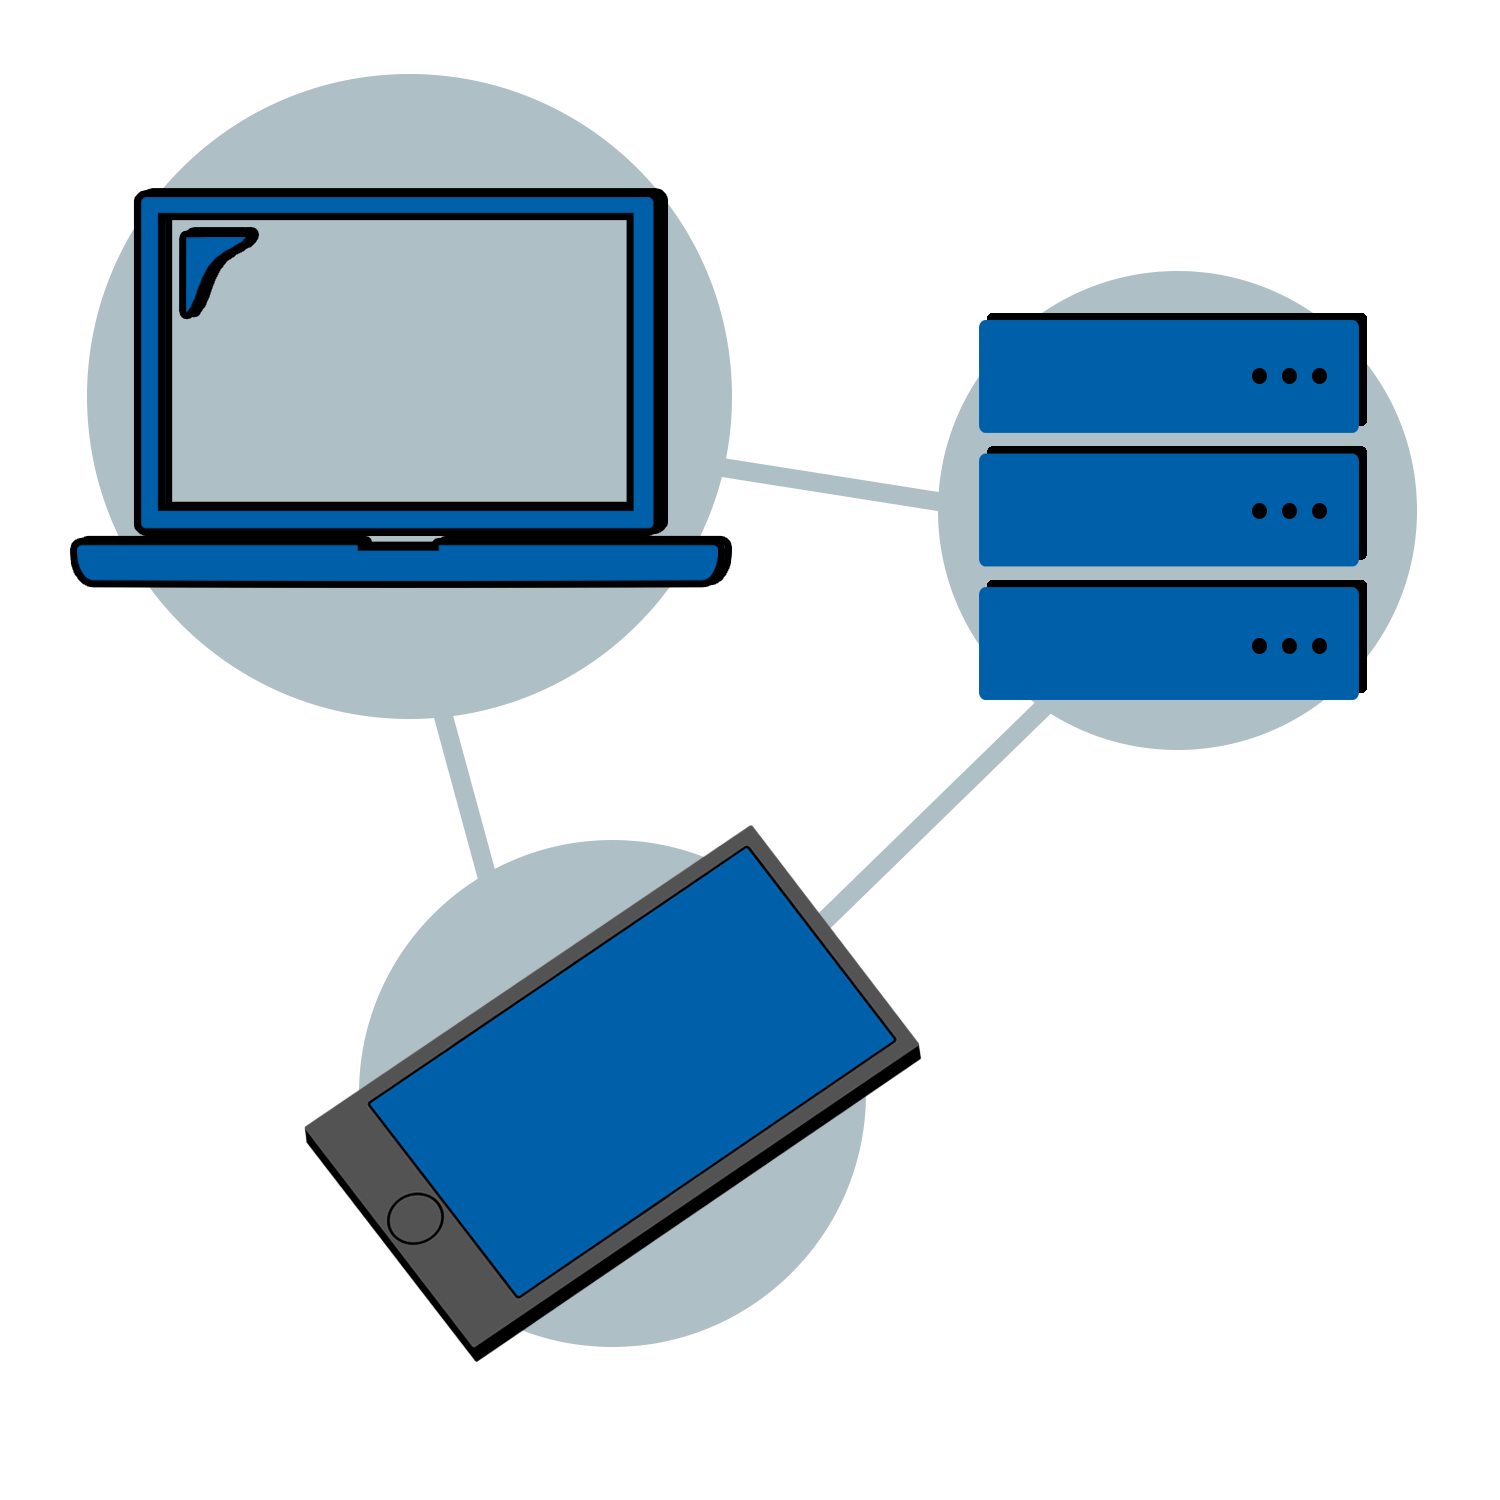 IT-Infrastruktur: Laptop, Handy und Server miteinander verbunden